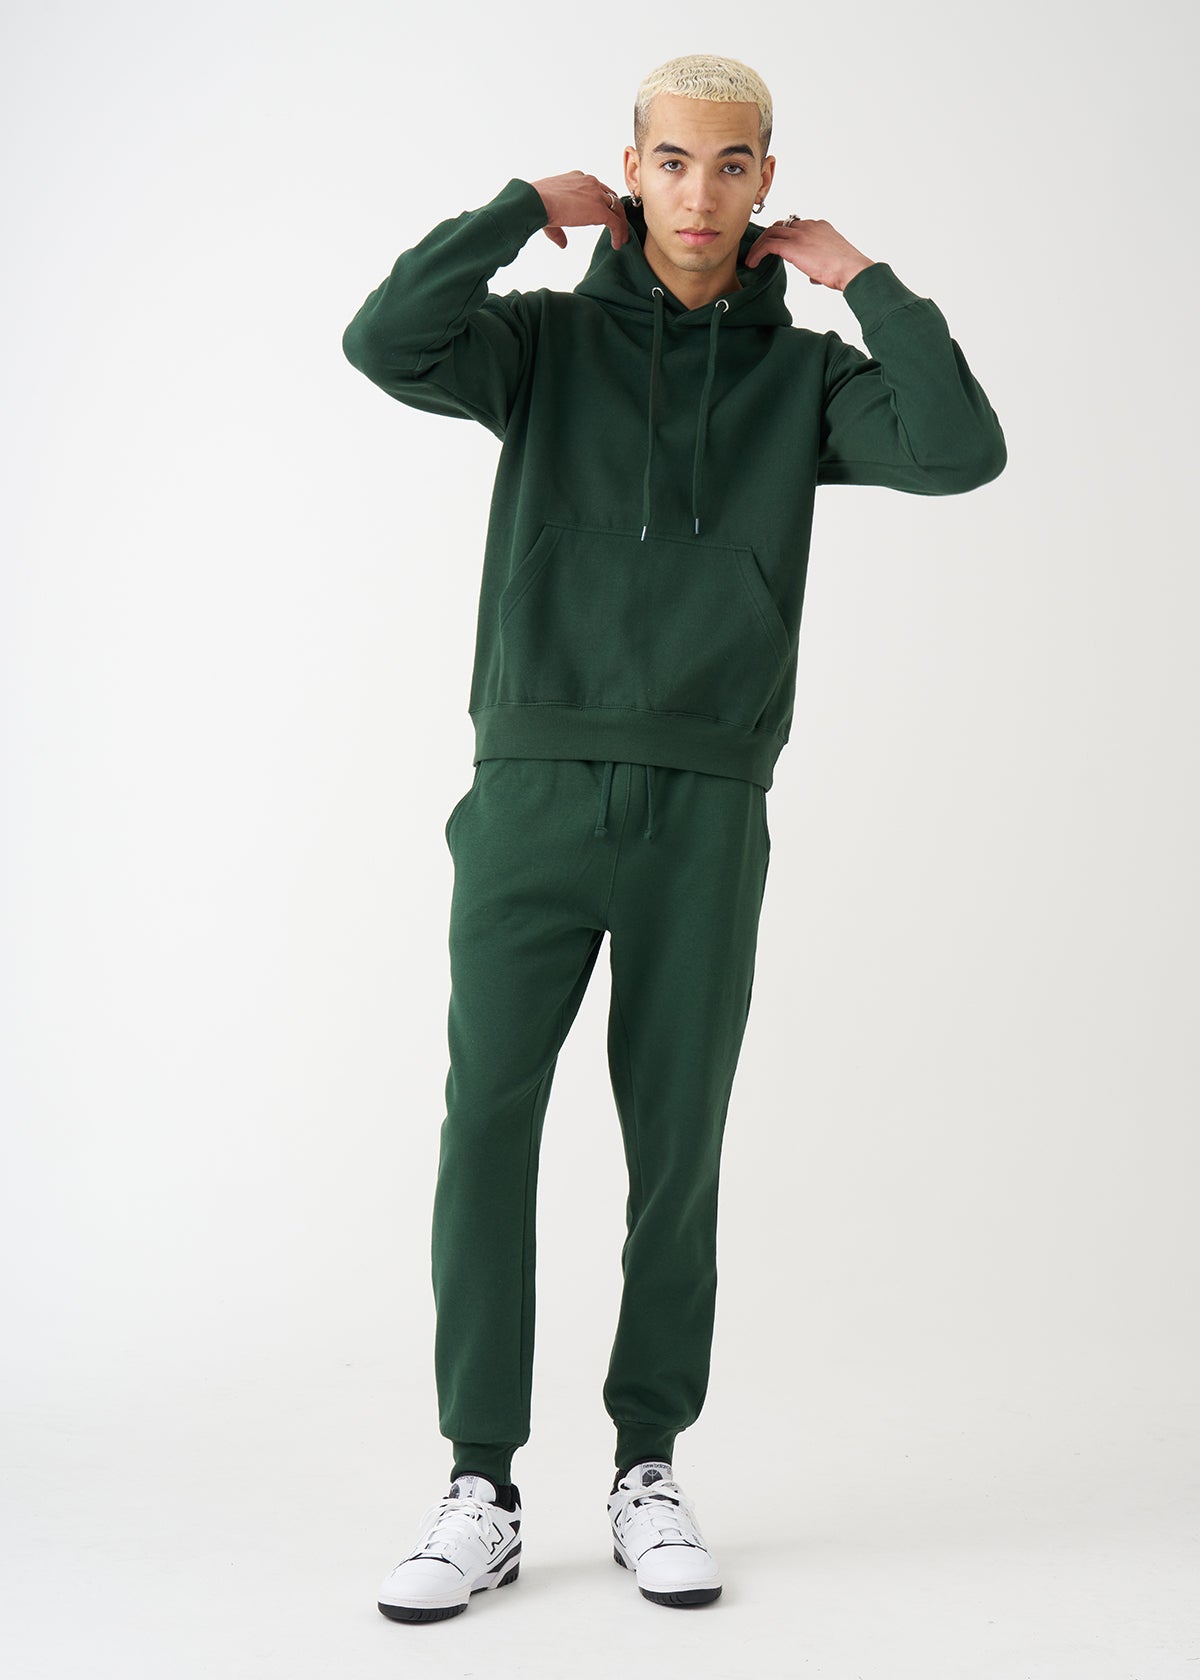 Hunter Green Heavy Blend Fleece SweatSuit – Blank Knights